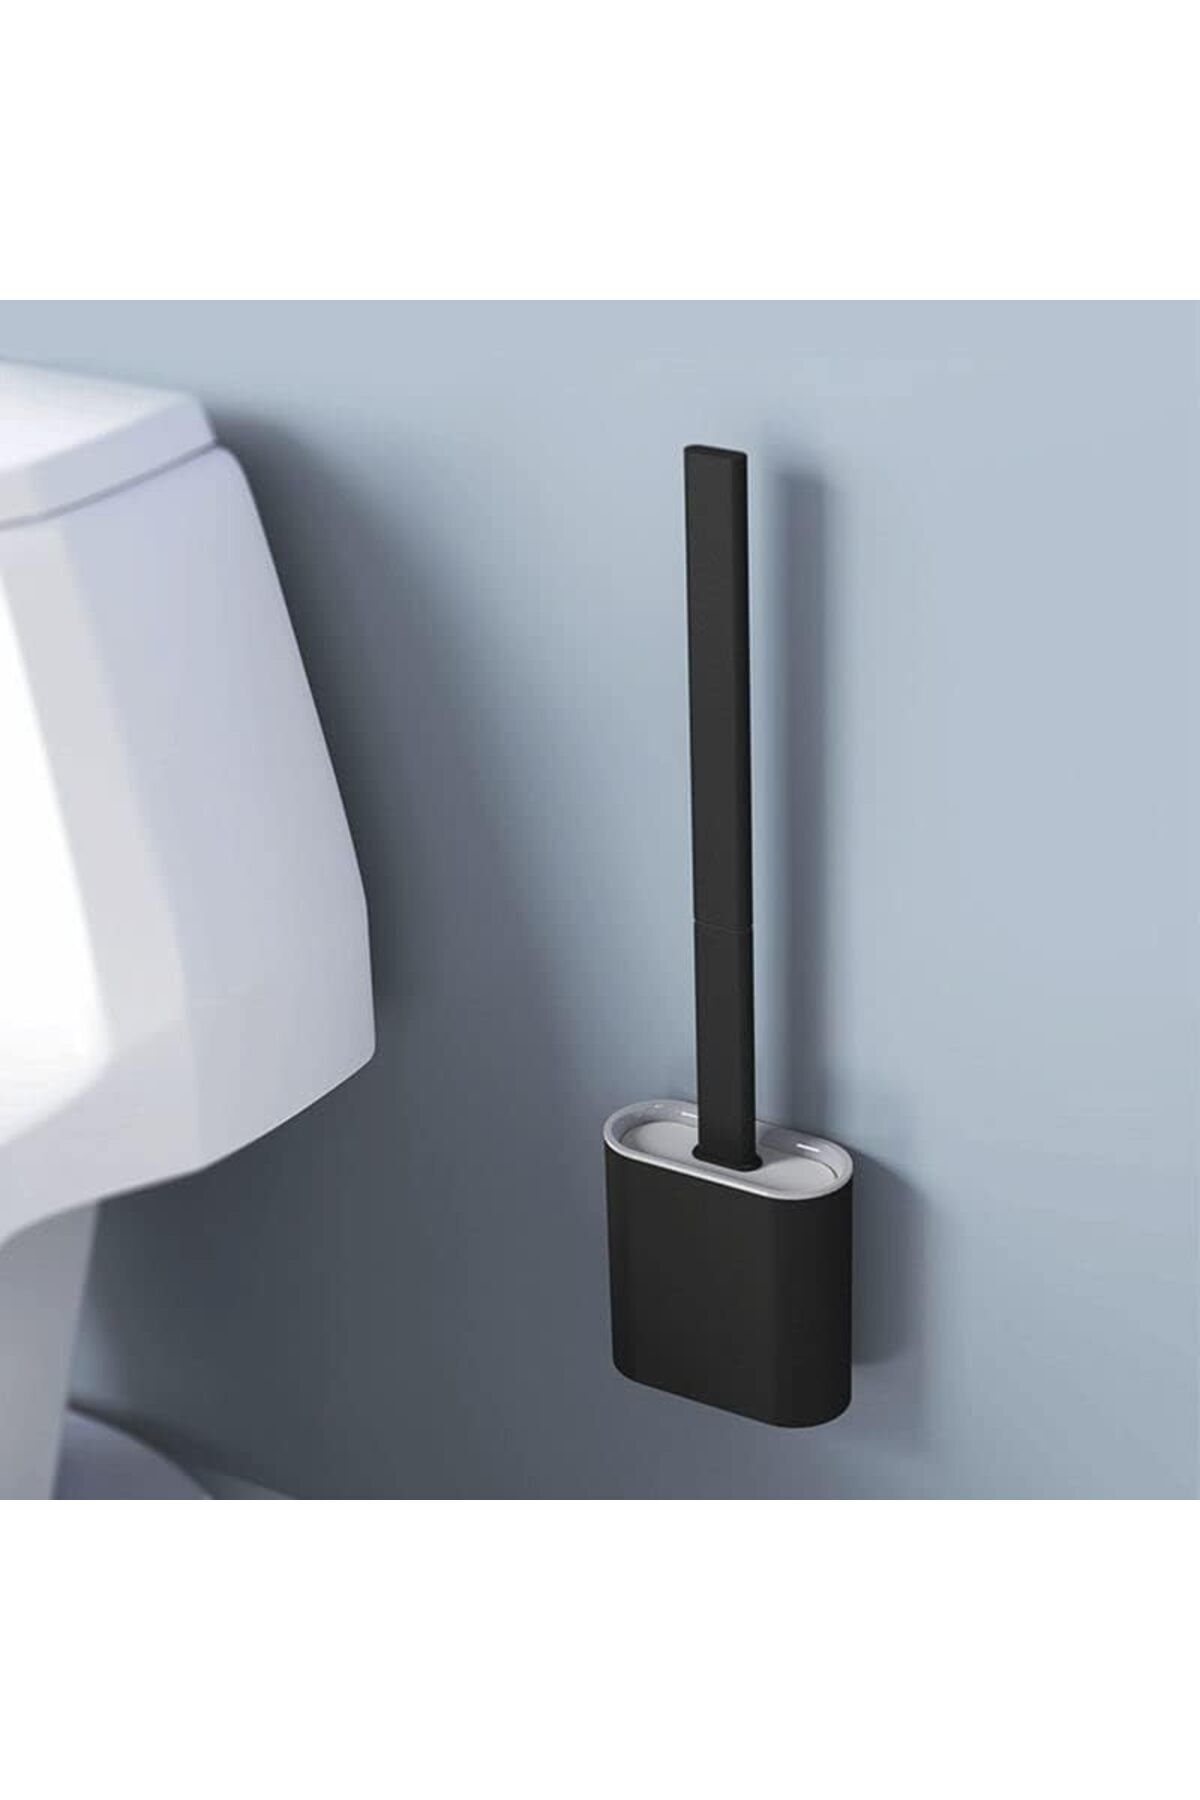 faseb Siyah Renk Silikon Banyo Tuvalet Klozet Temizleme Fırçası Ve Tutucu Wc Klozet Fırçası